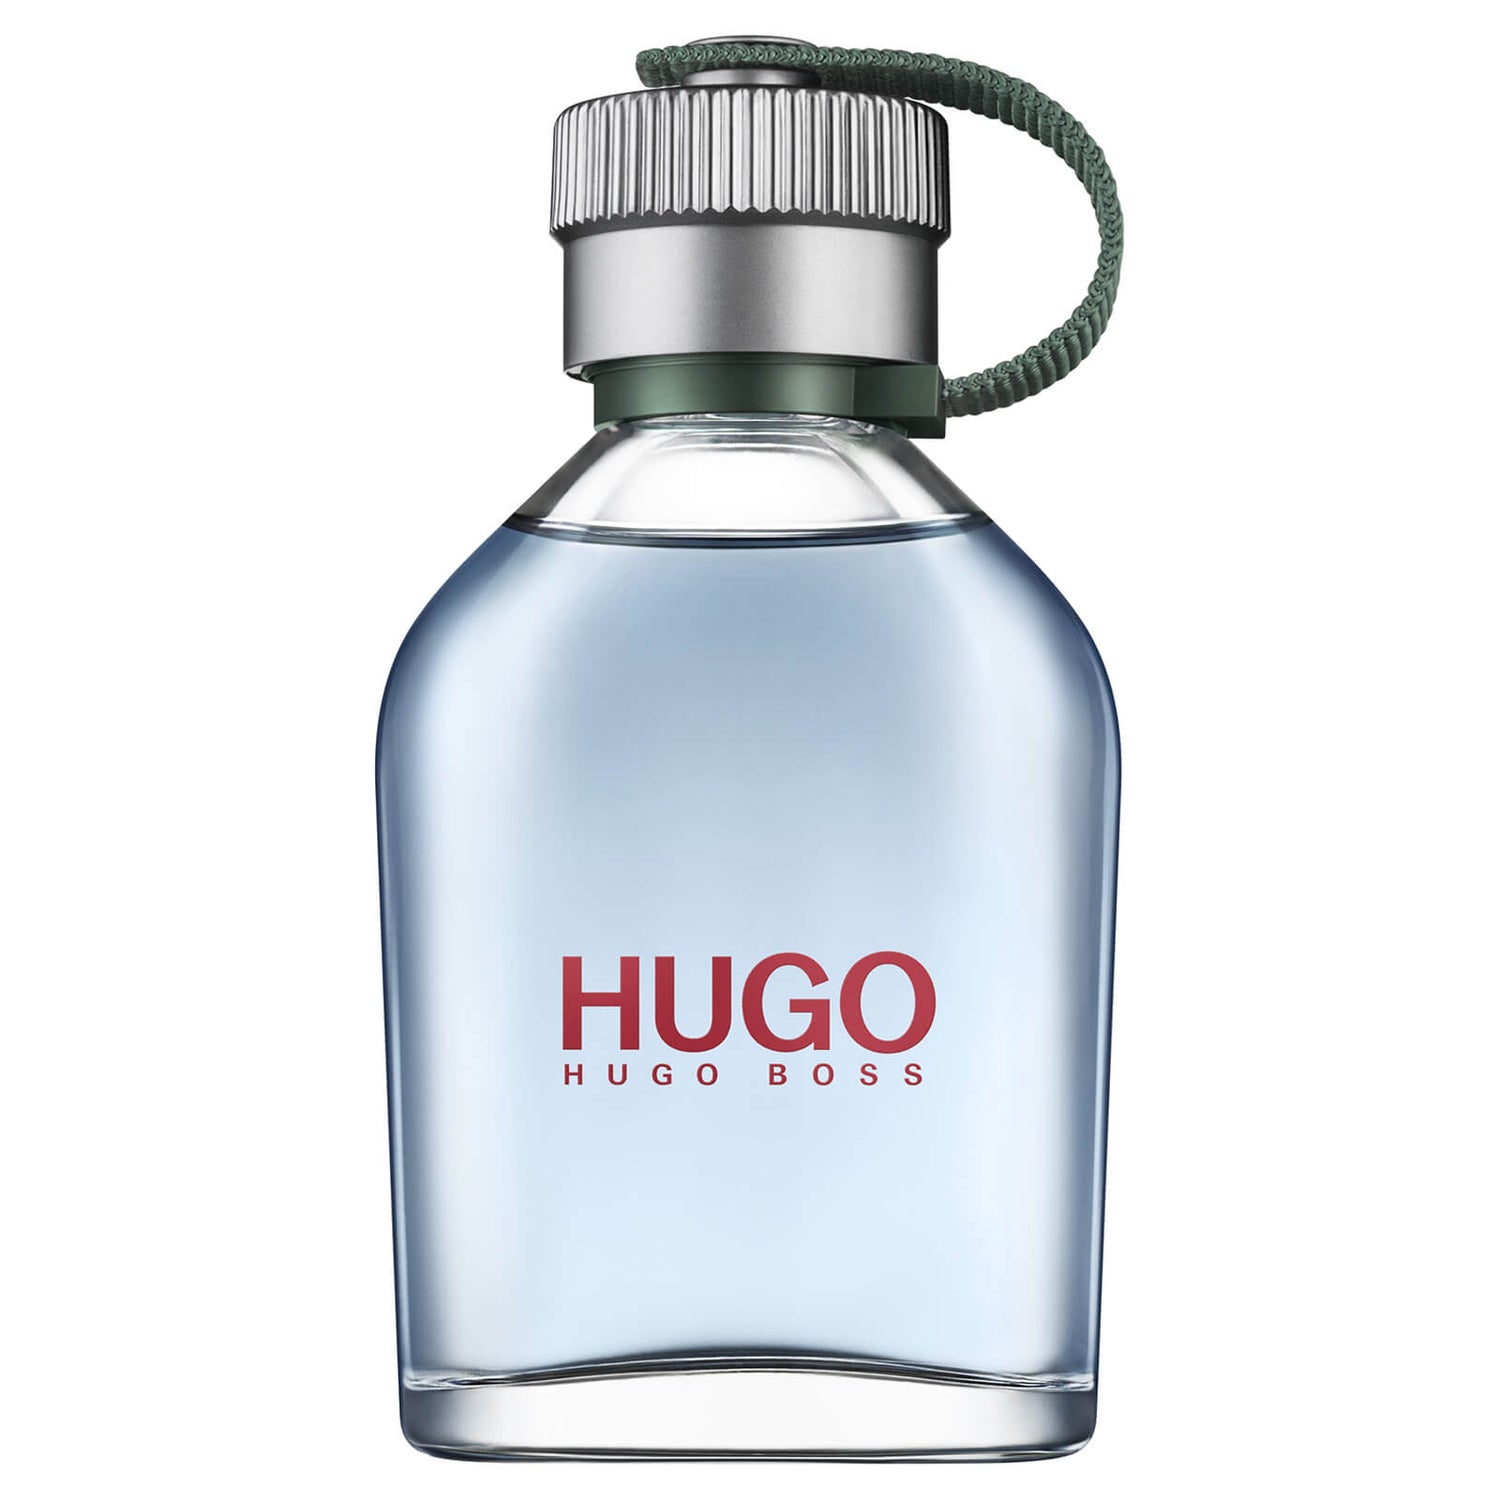 Hugo Boss HUGO Man After Shave Lotion 75ml - Entrega GRÁTIS